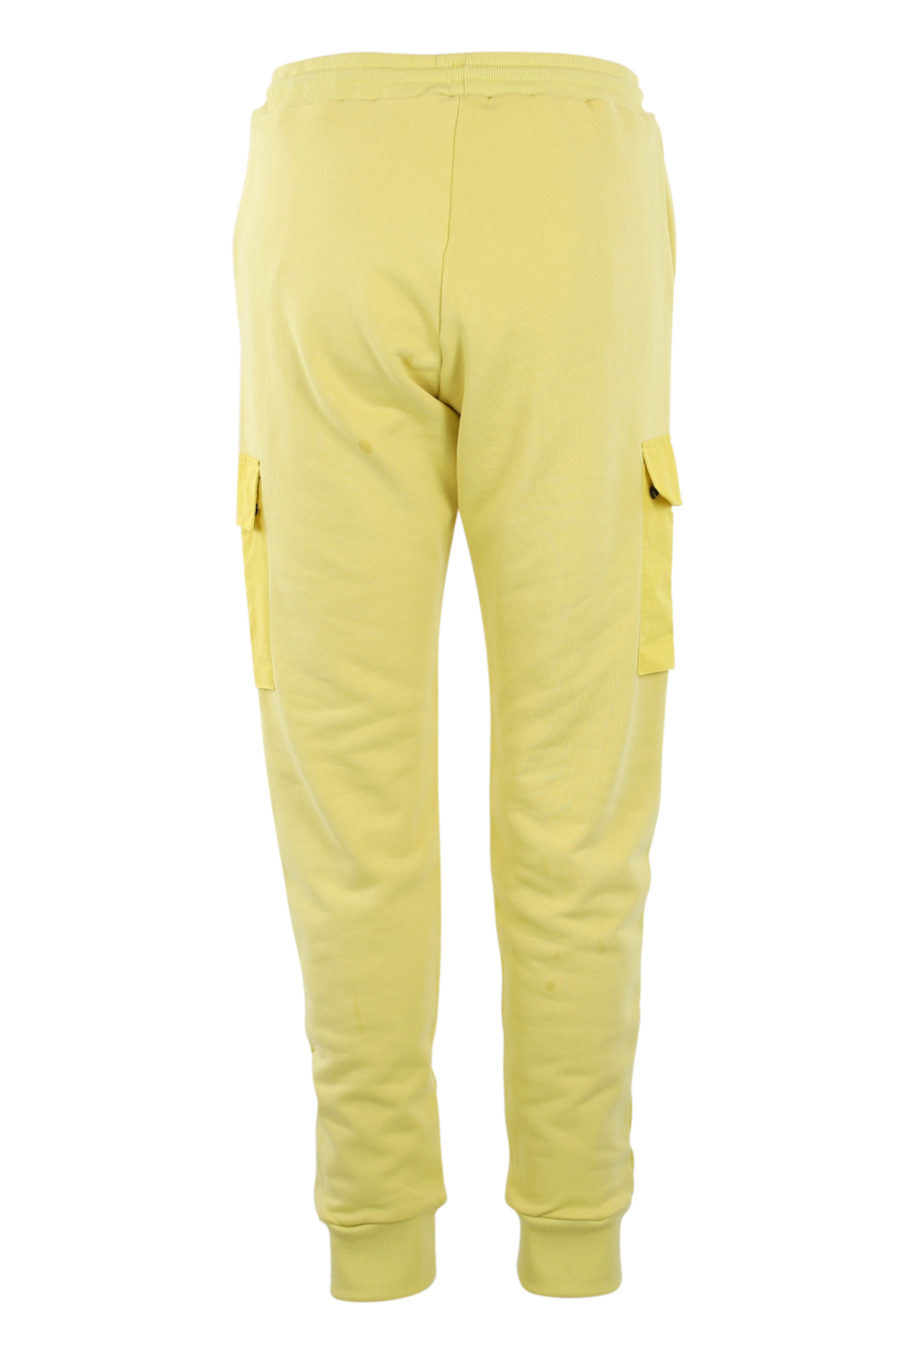 Pantalón de chándal amarillo con bolsillos - IMG 0907